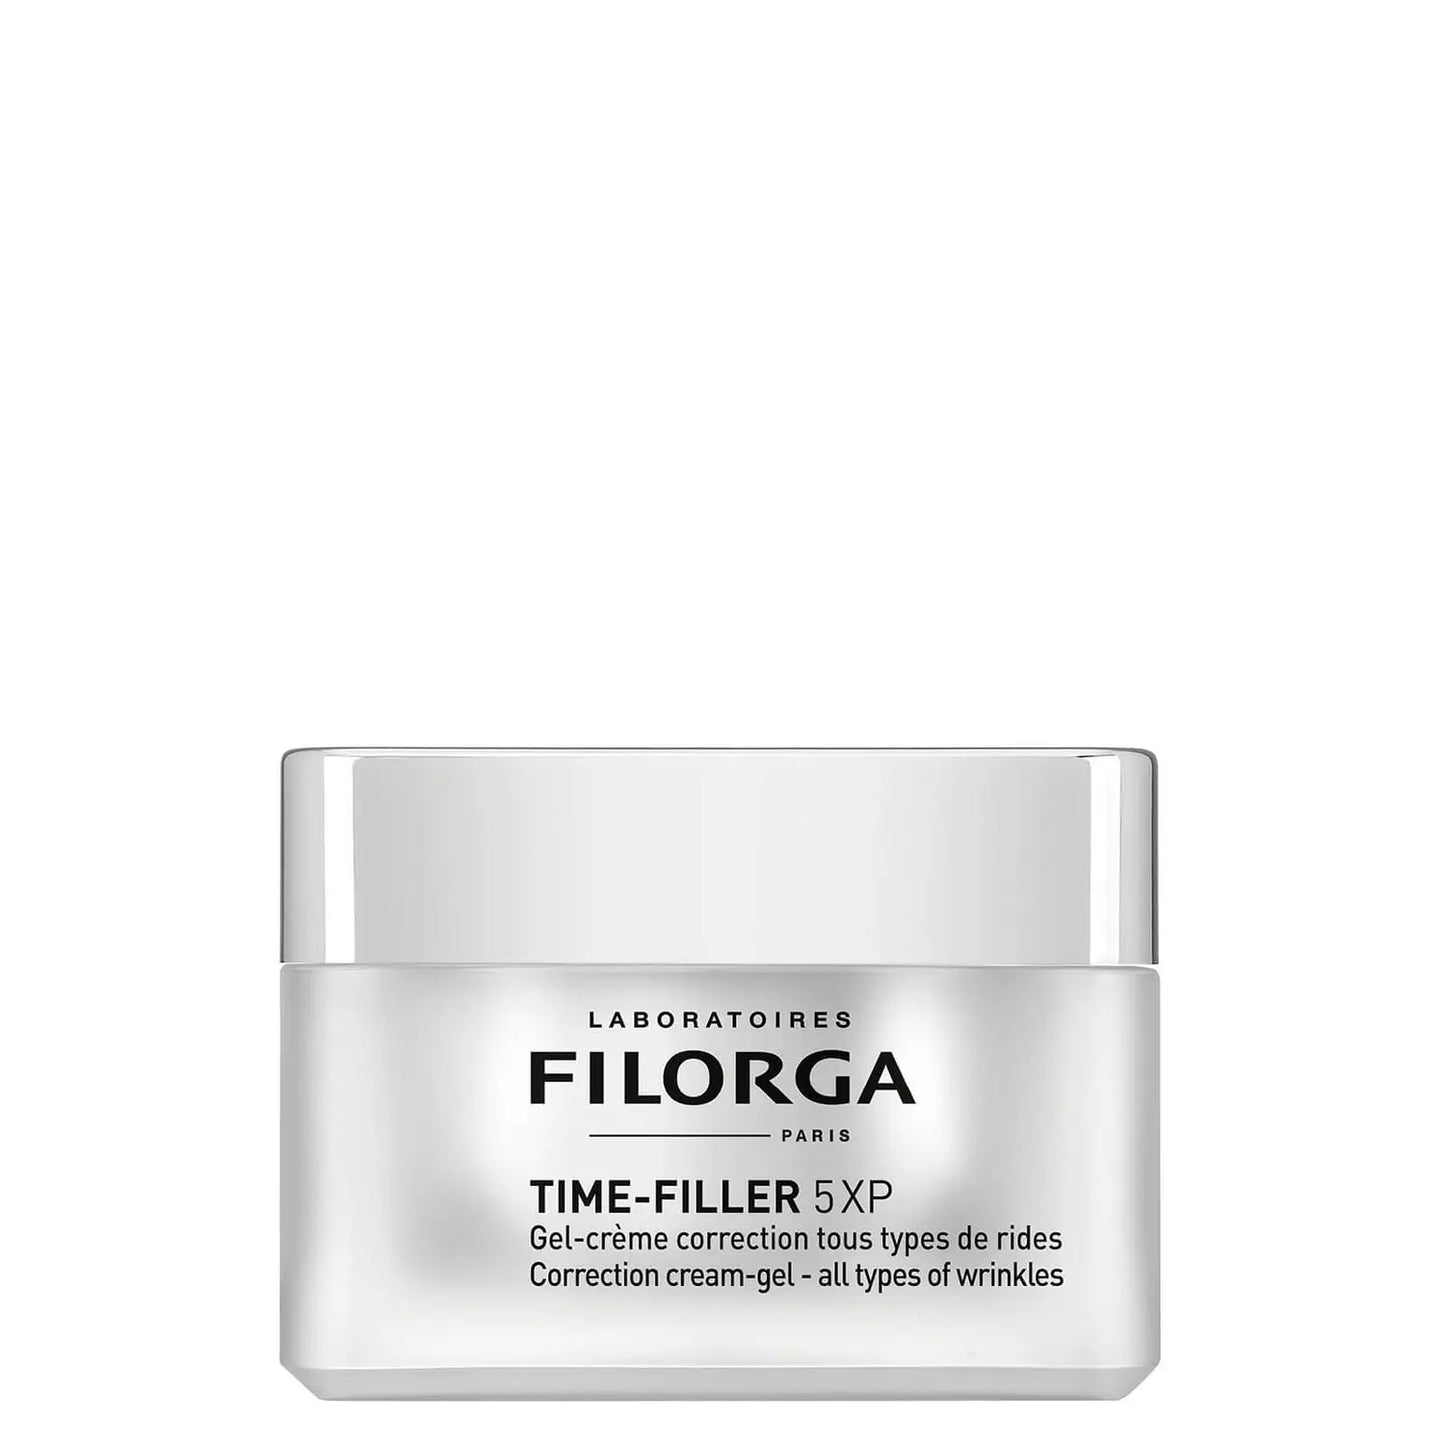 Filorga Time-Filler 5XP Anti-wrinkle Mattifying Gel-Cream (1 X 50ml)